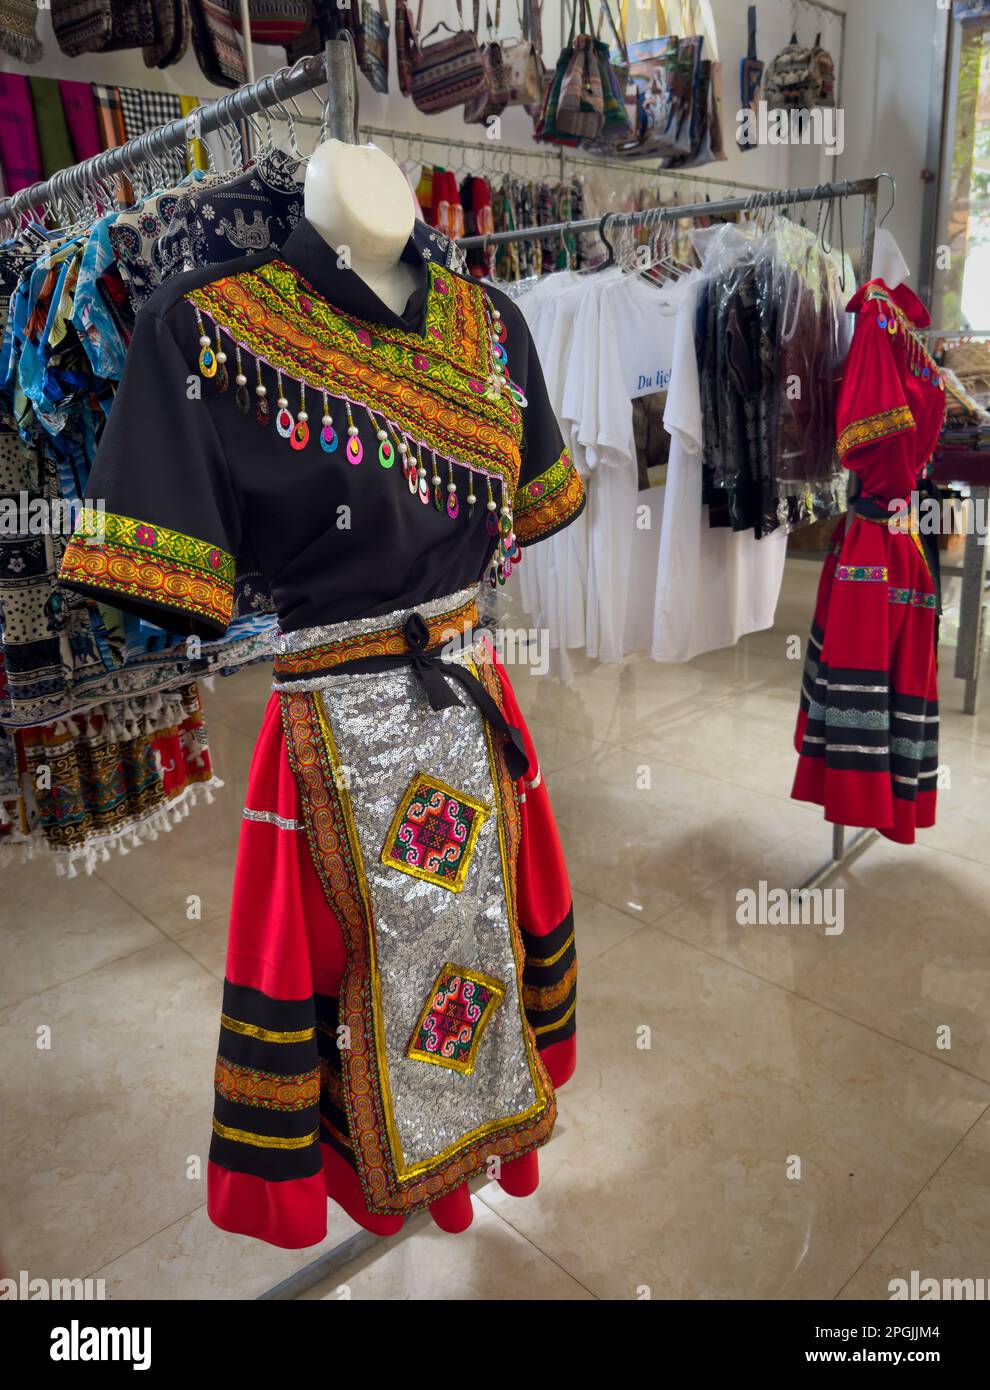 Un costume femminile ricamato in modo elaborato appartenente alla minoranza etnica Mnong in vendita in un negozio di souvenir a buon Jun, Lien Son, nel centro del Vietnam Foto Stock